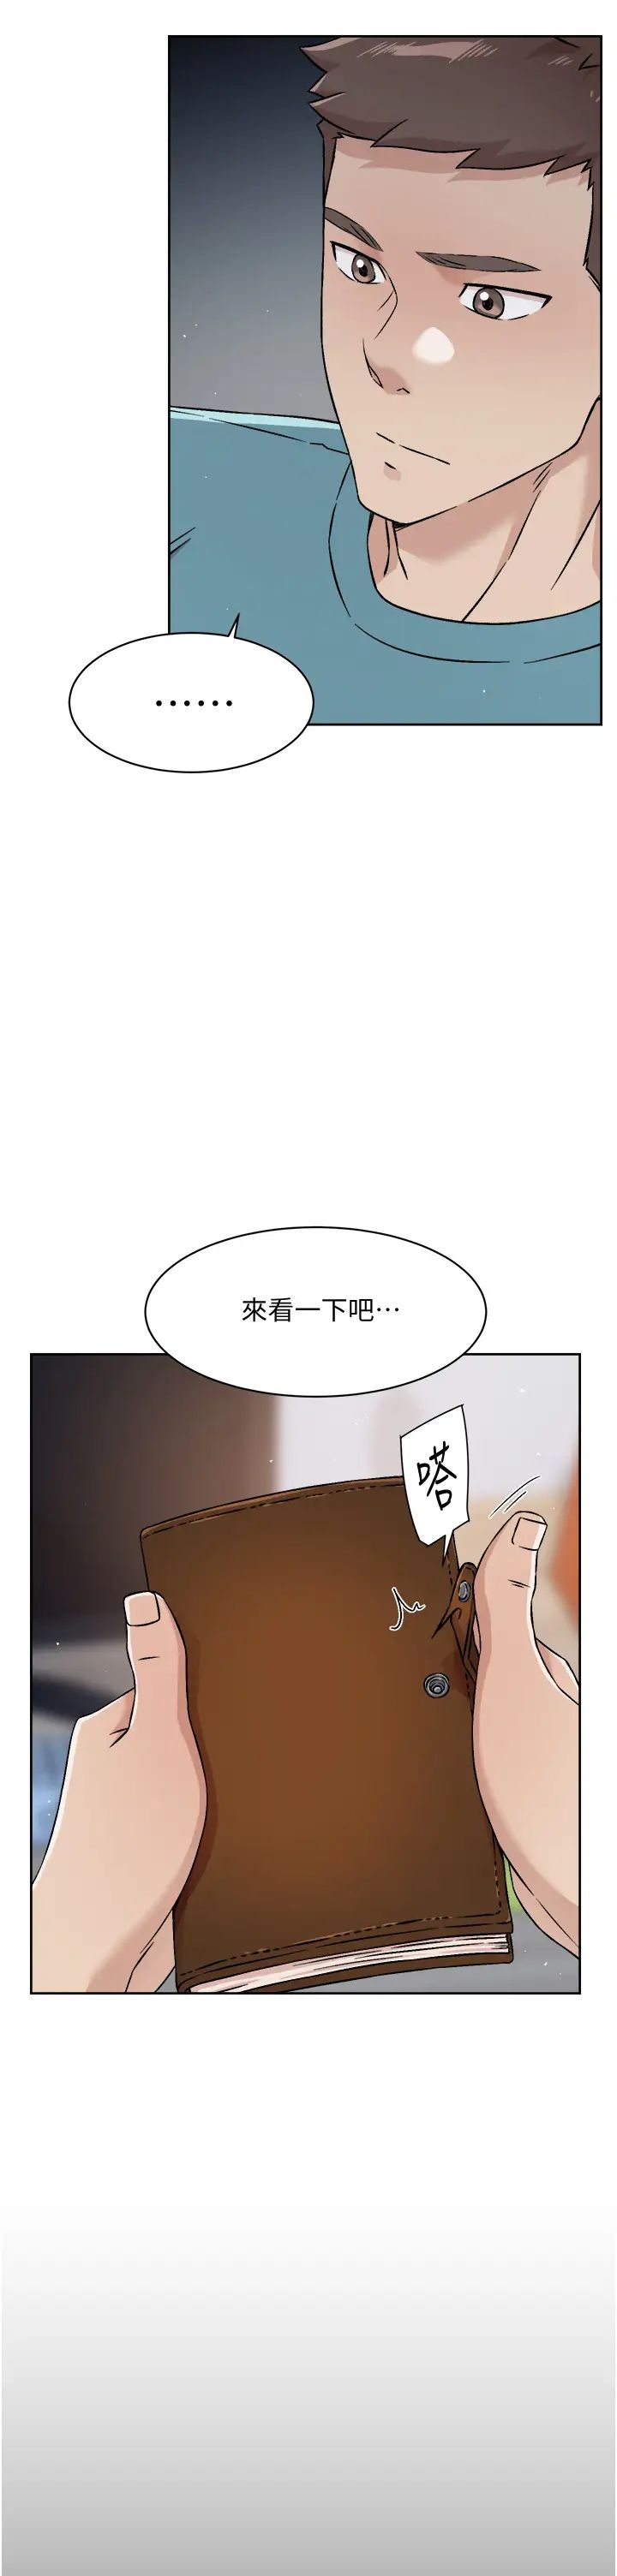 韩国污漫画 好友的私生活 第42话 满嘴都是精液 33